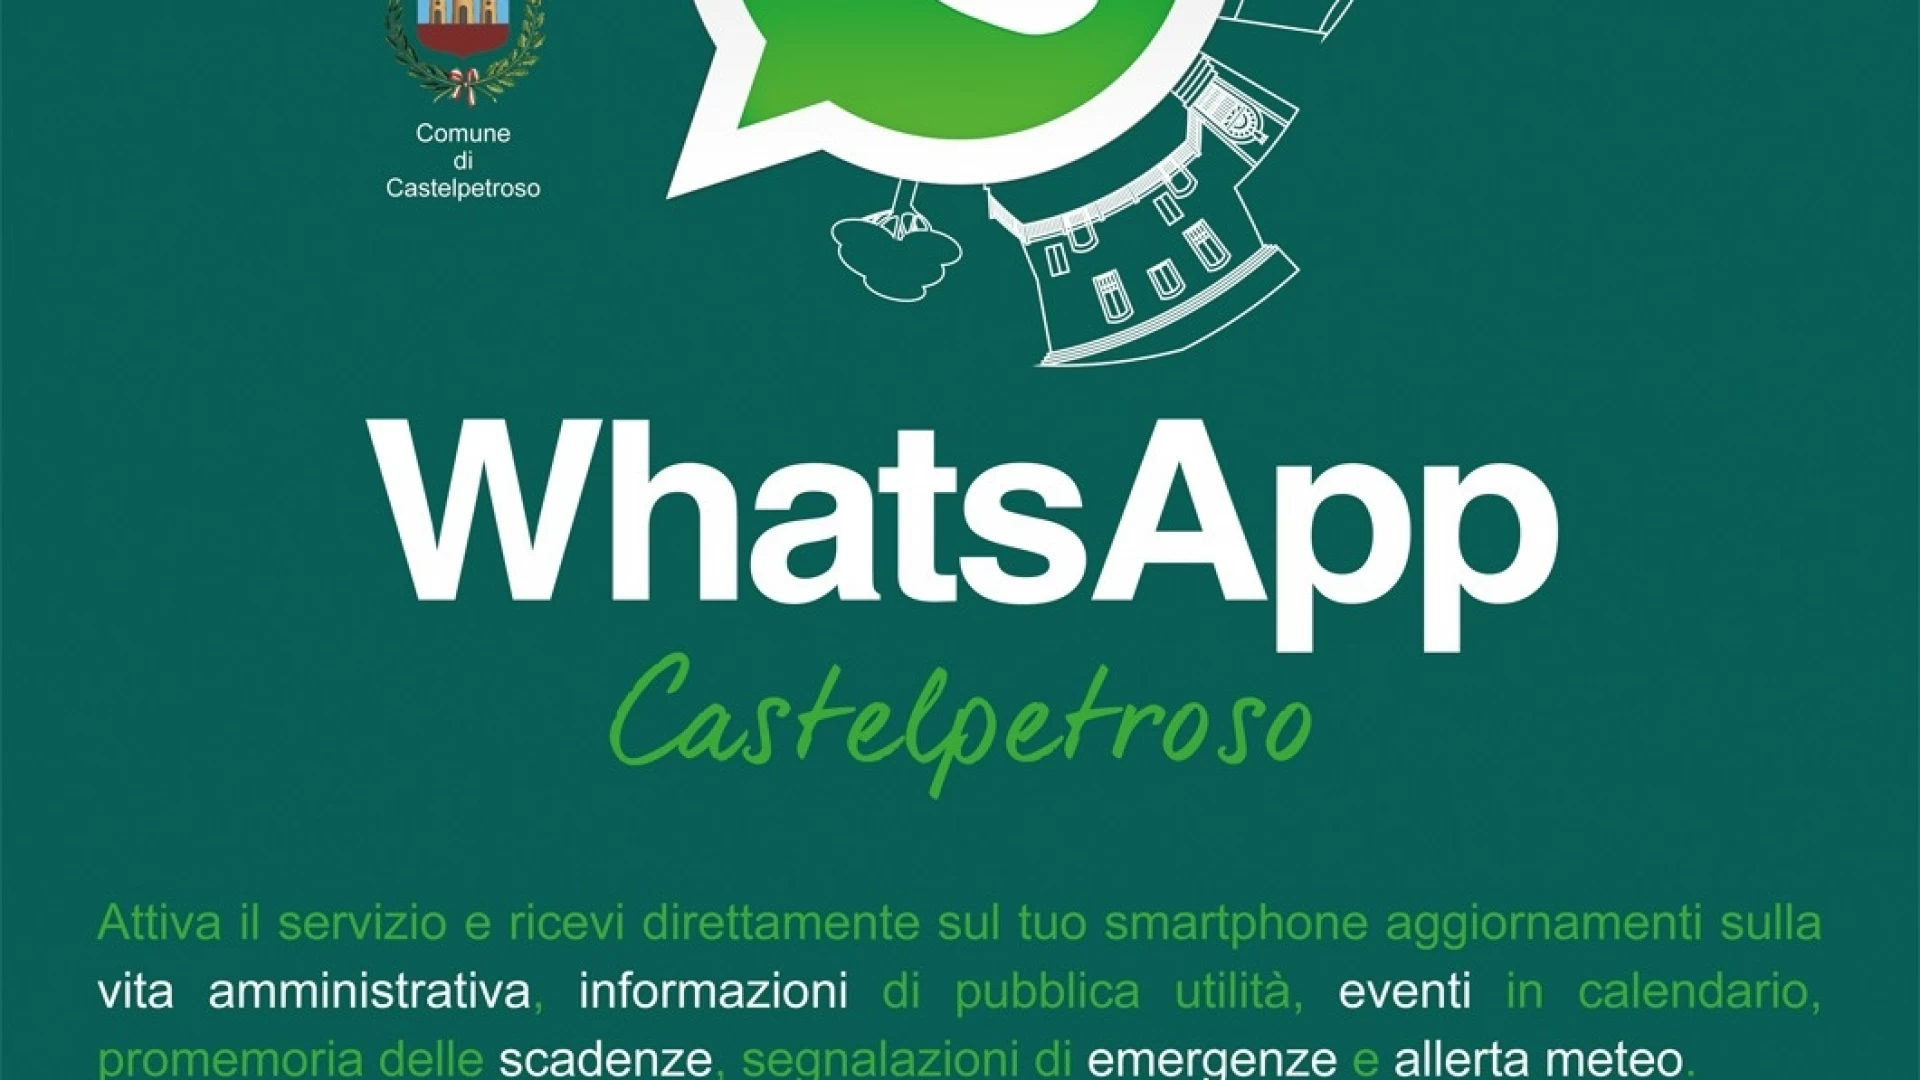 L’Amministrazione Comunale di Castelpetroso attiva il servizio informativo per i cittadini via WhatsApp.